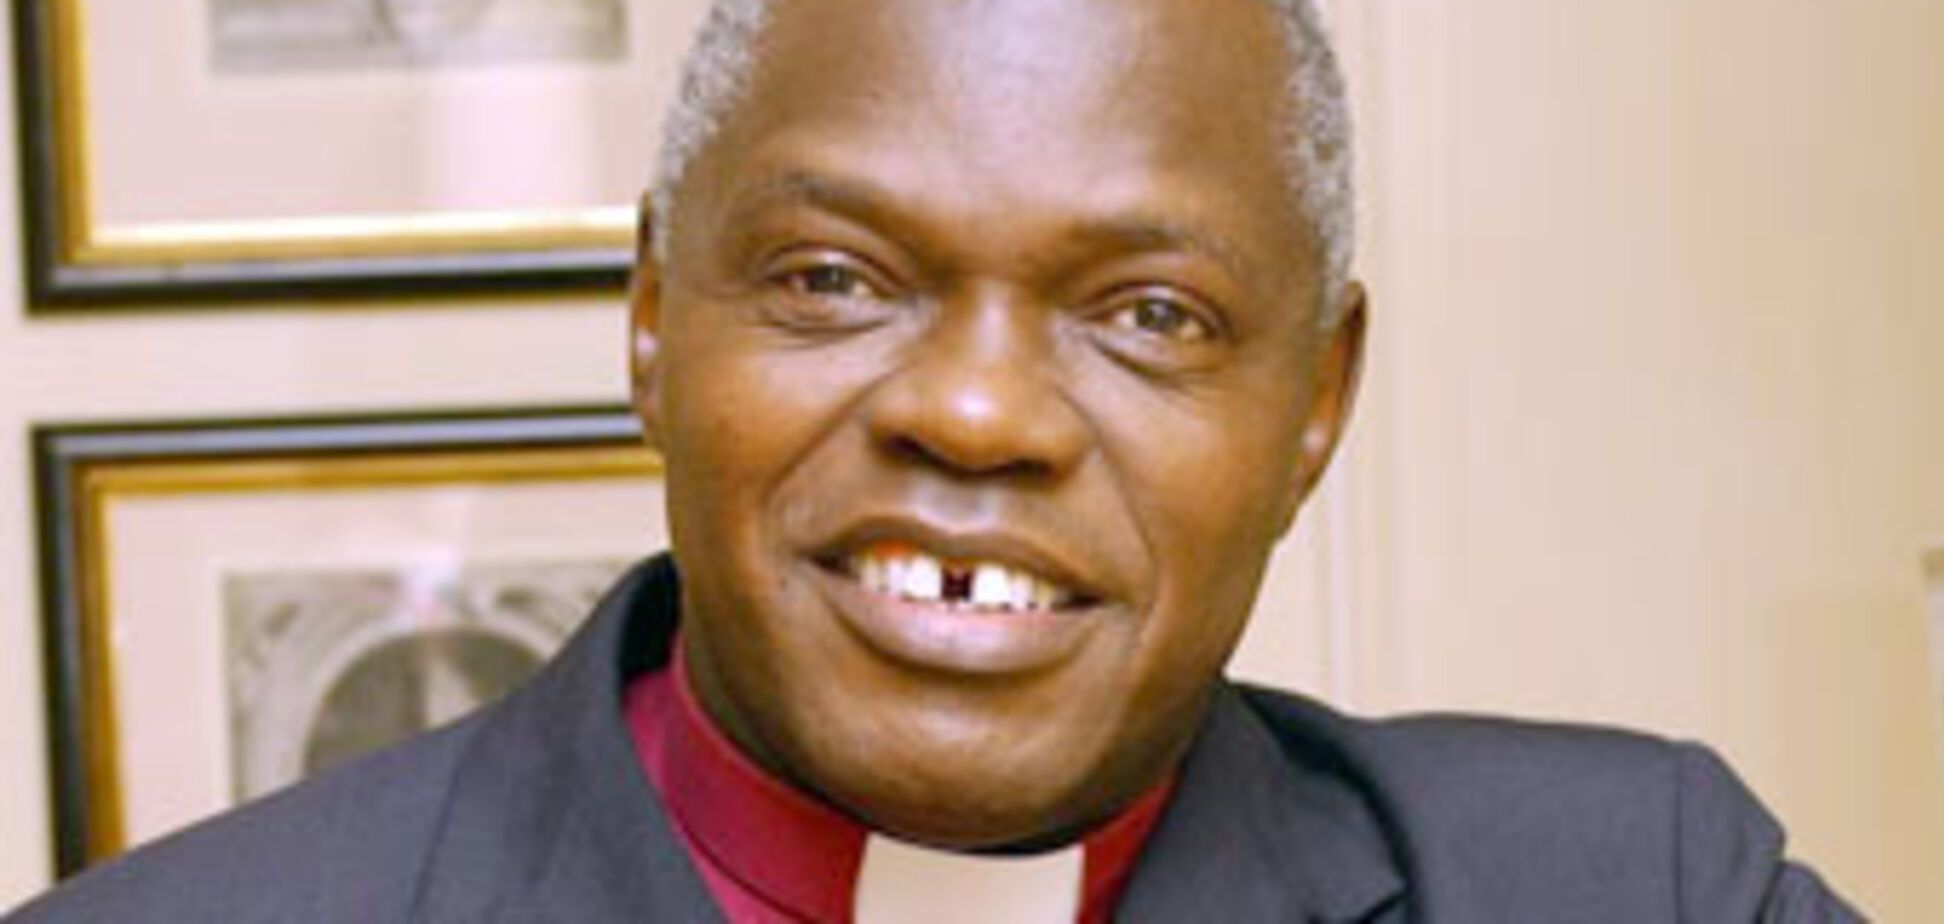 Архієпископ звинуватив BBC у релігійній дискримінації